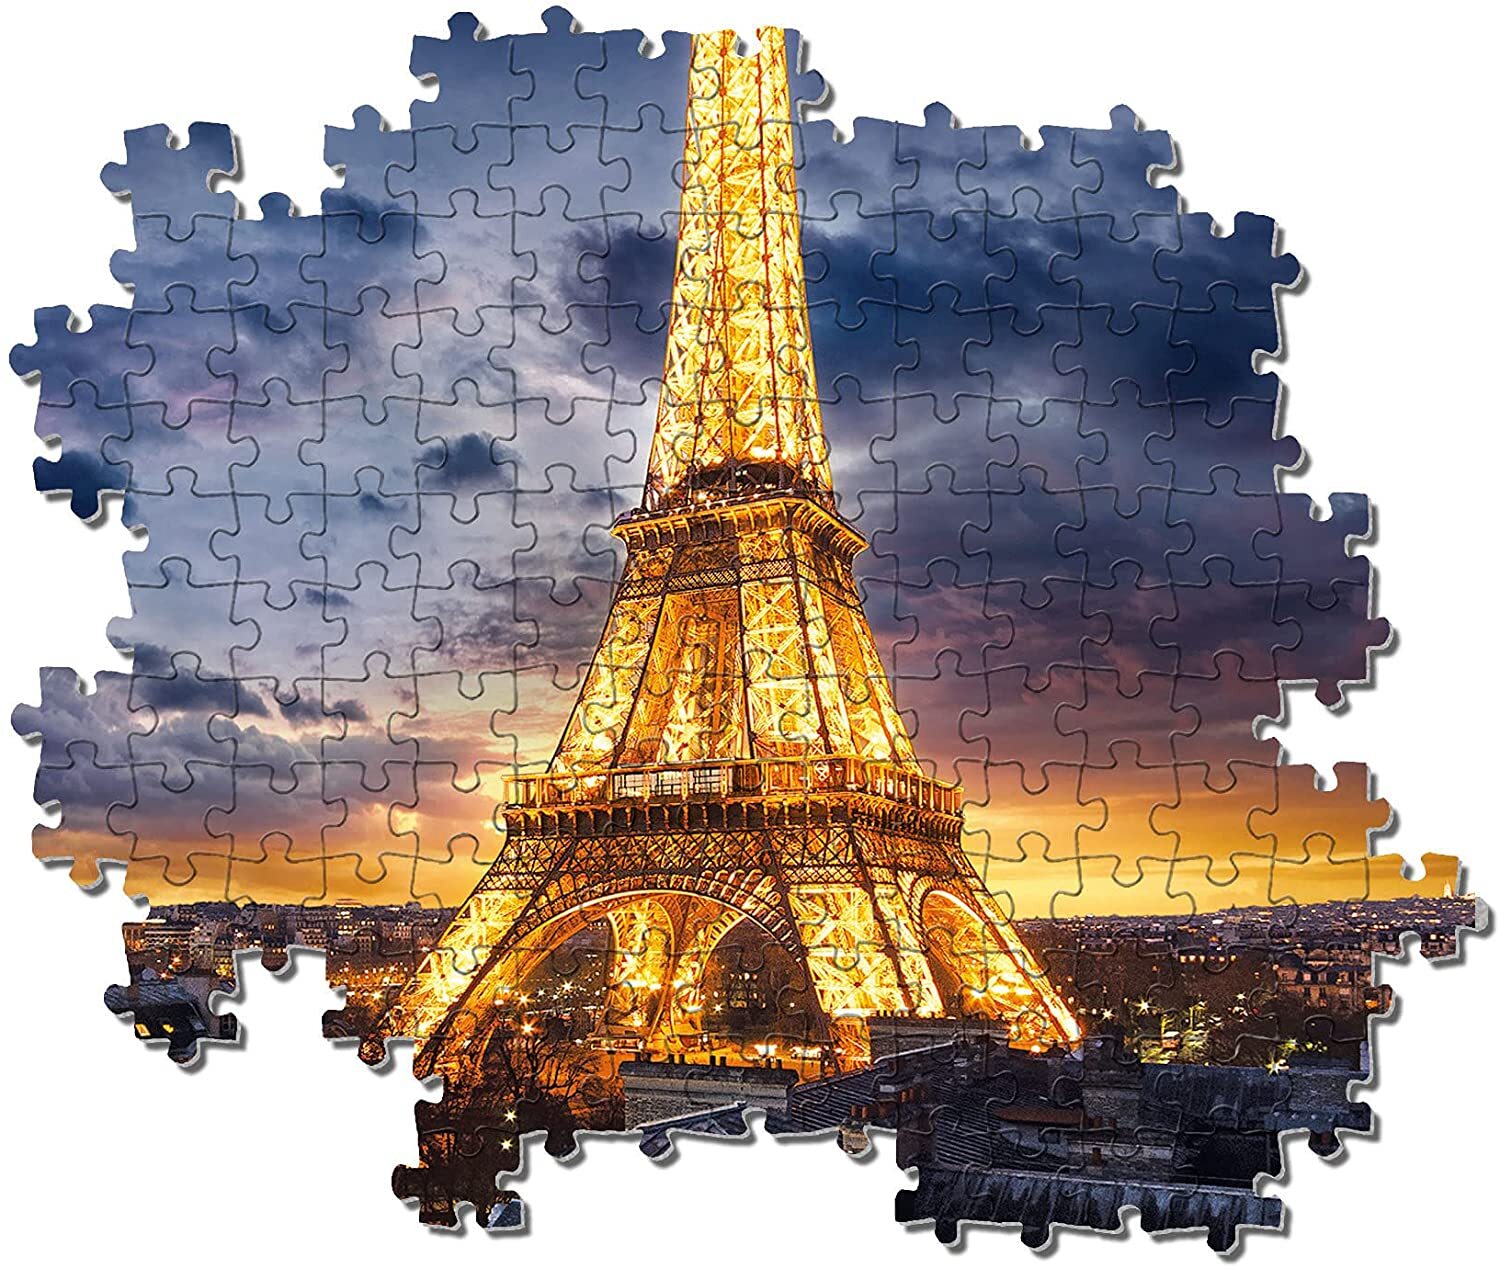 Clementoni 39514 Eiffel-Turm – Puzzle 1000 Teile, High Quality Collection, Geschicklichkeitsspiel für die ganze Familie, buntes 